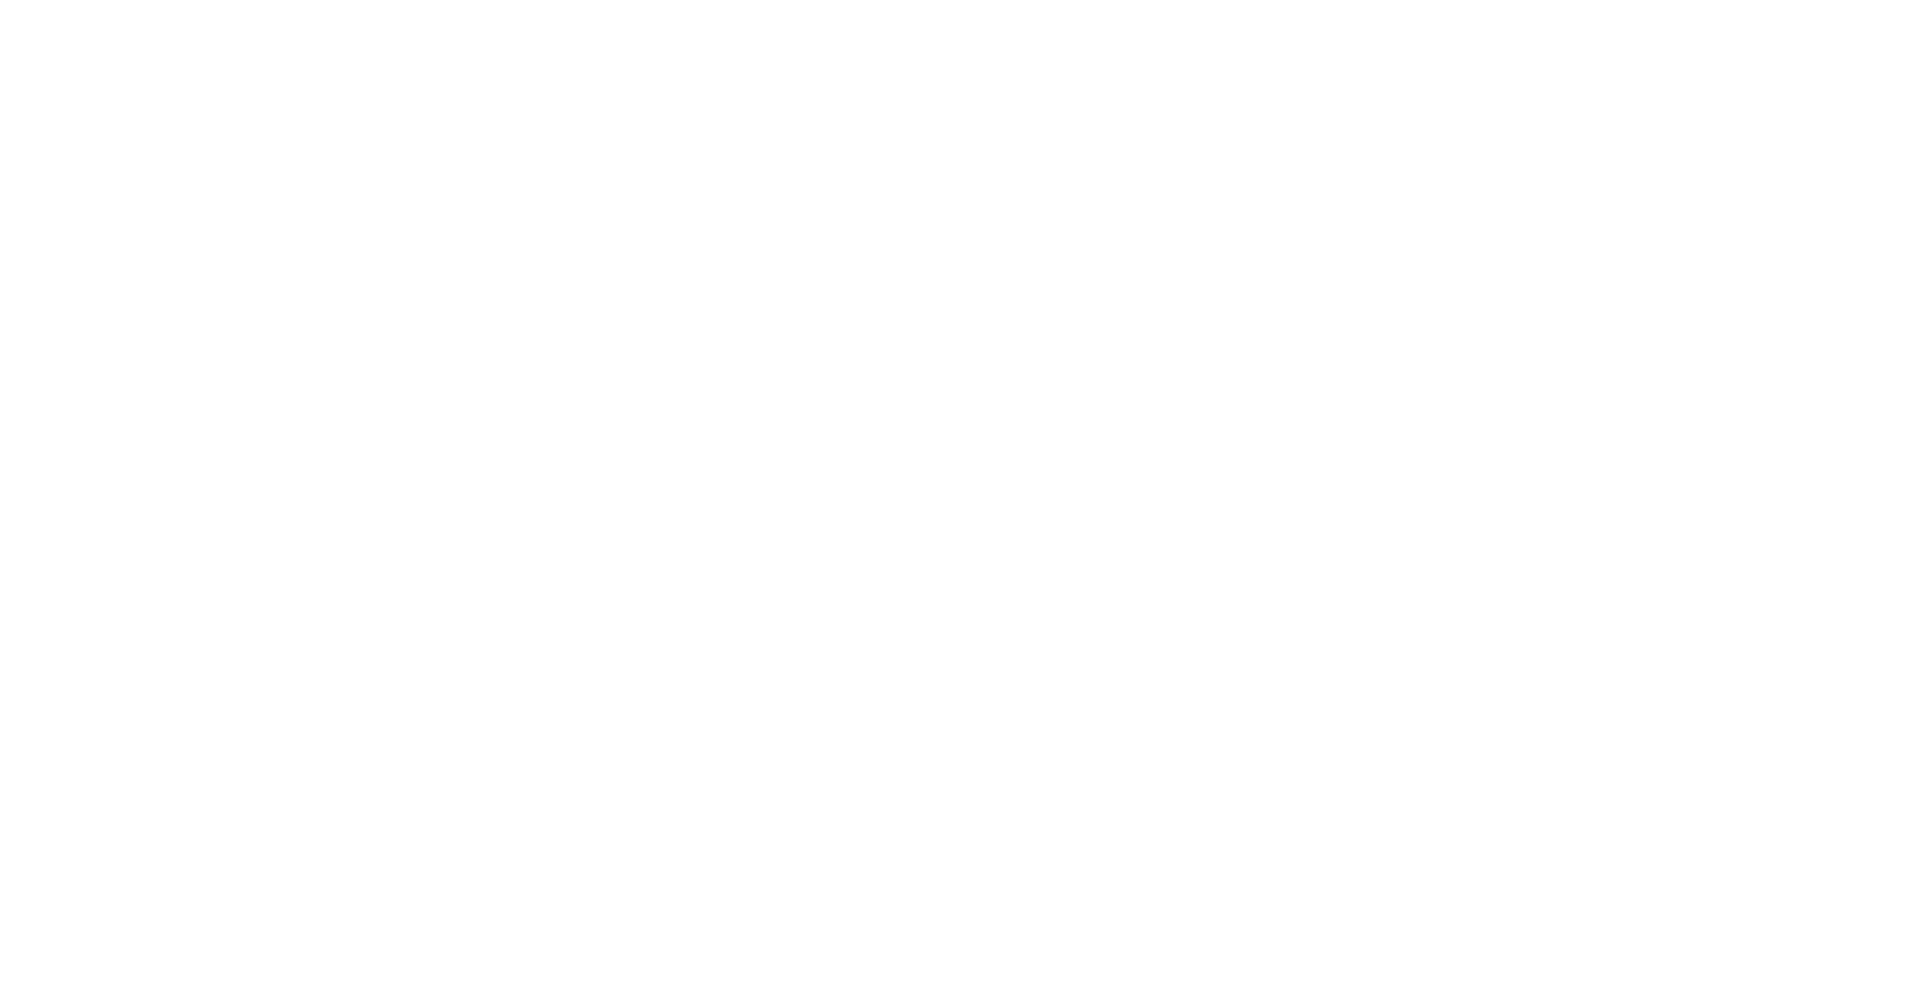 Logo Hacienda el sueño activacar